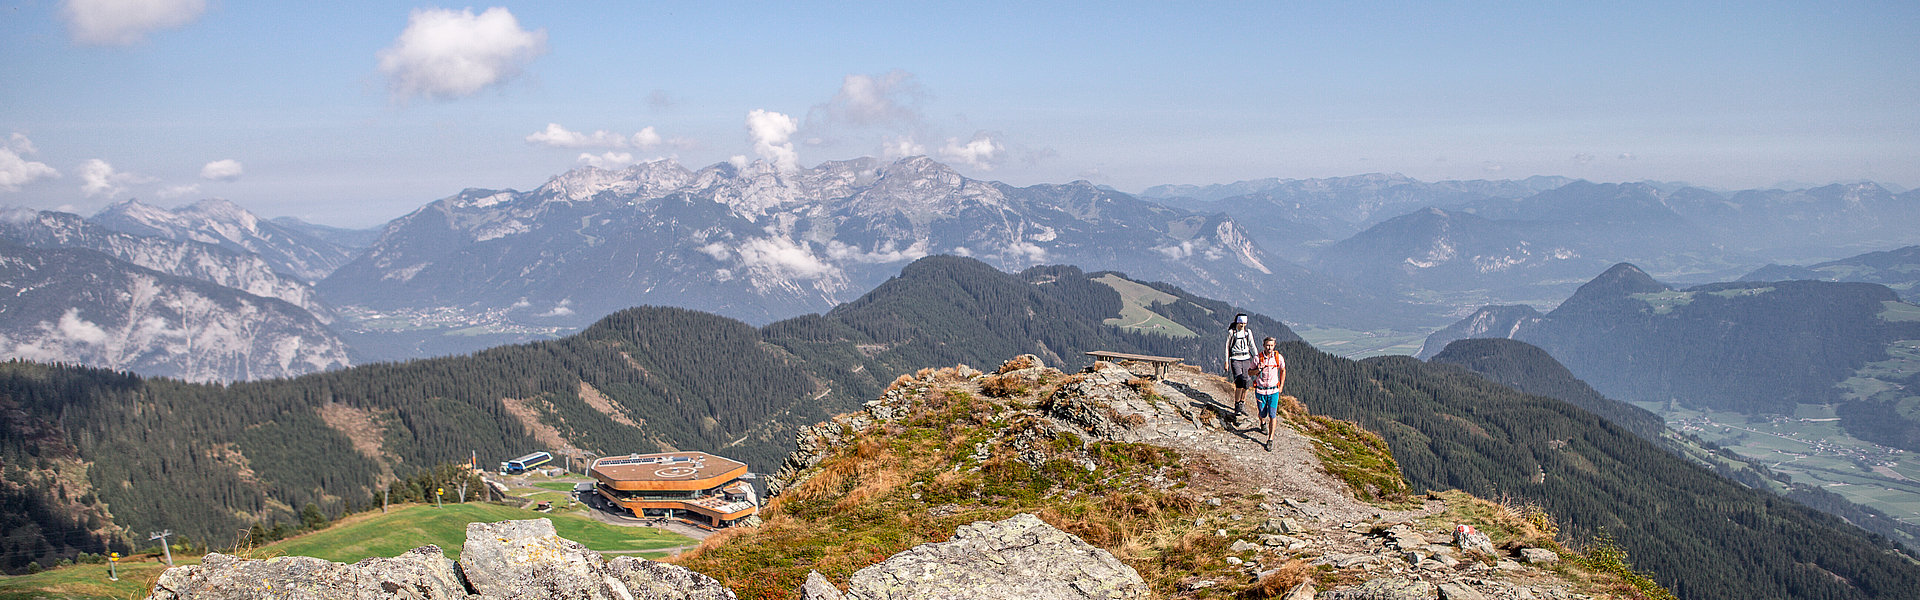 Wandern Spieljoch Sommer | © Erste Ferienregion im Zillertal / Andi Frank